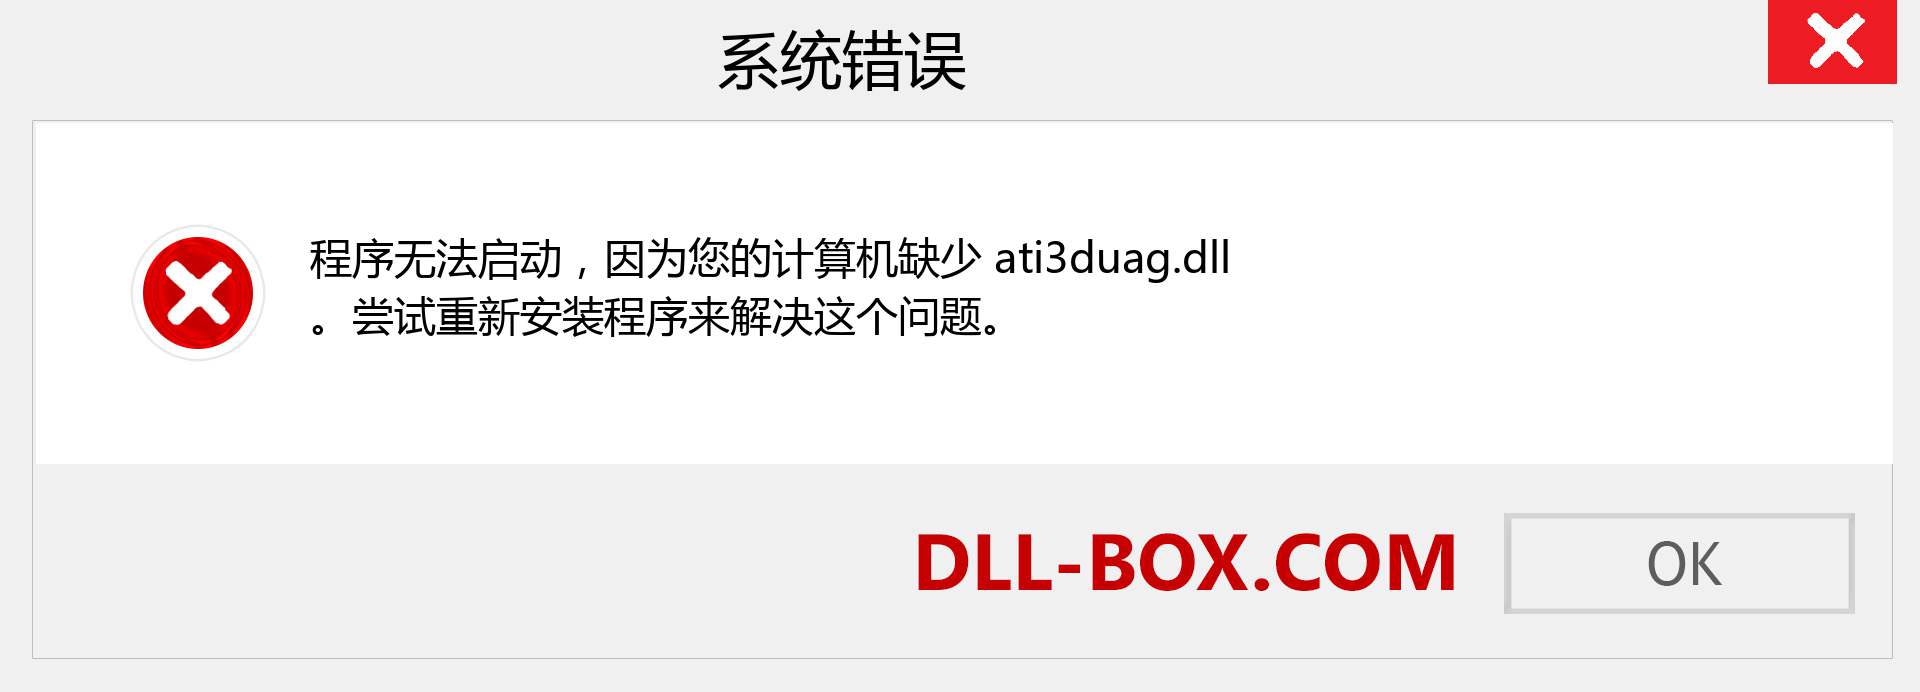 ati3duag.dll 文件丢失？。 适用于 Windows 7、8、10 的下载 - 修复 Windows、照片、图像上的 ati3duag dll 丢失错误